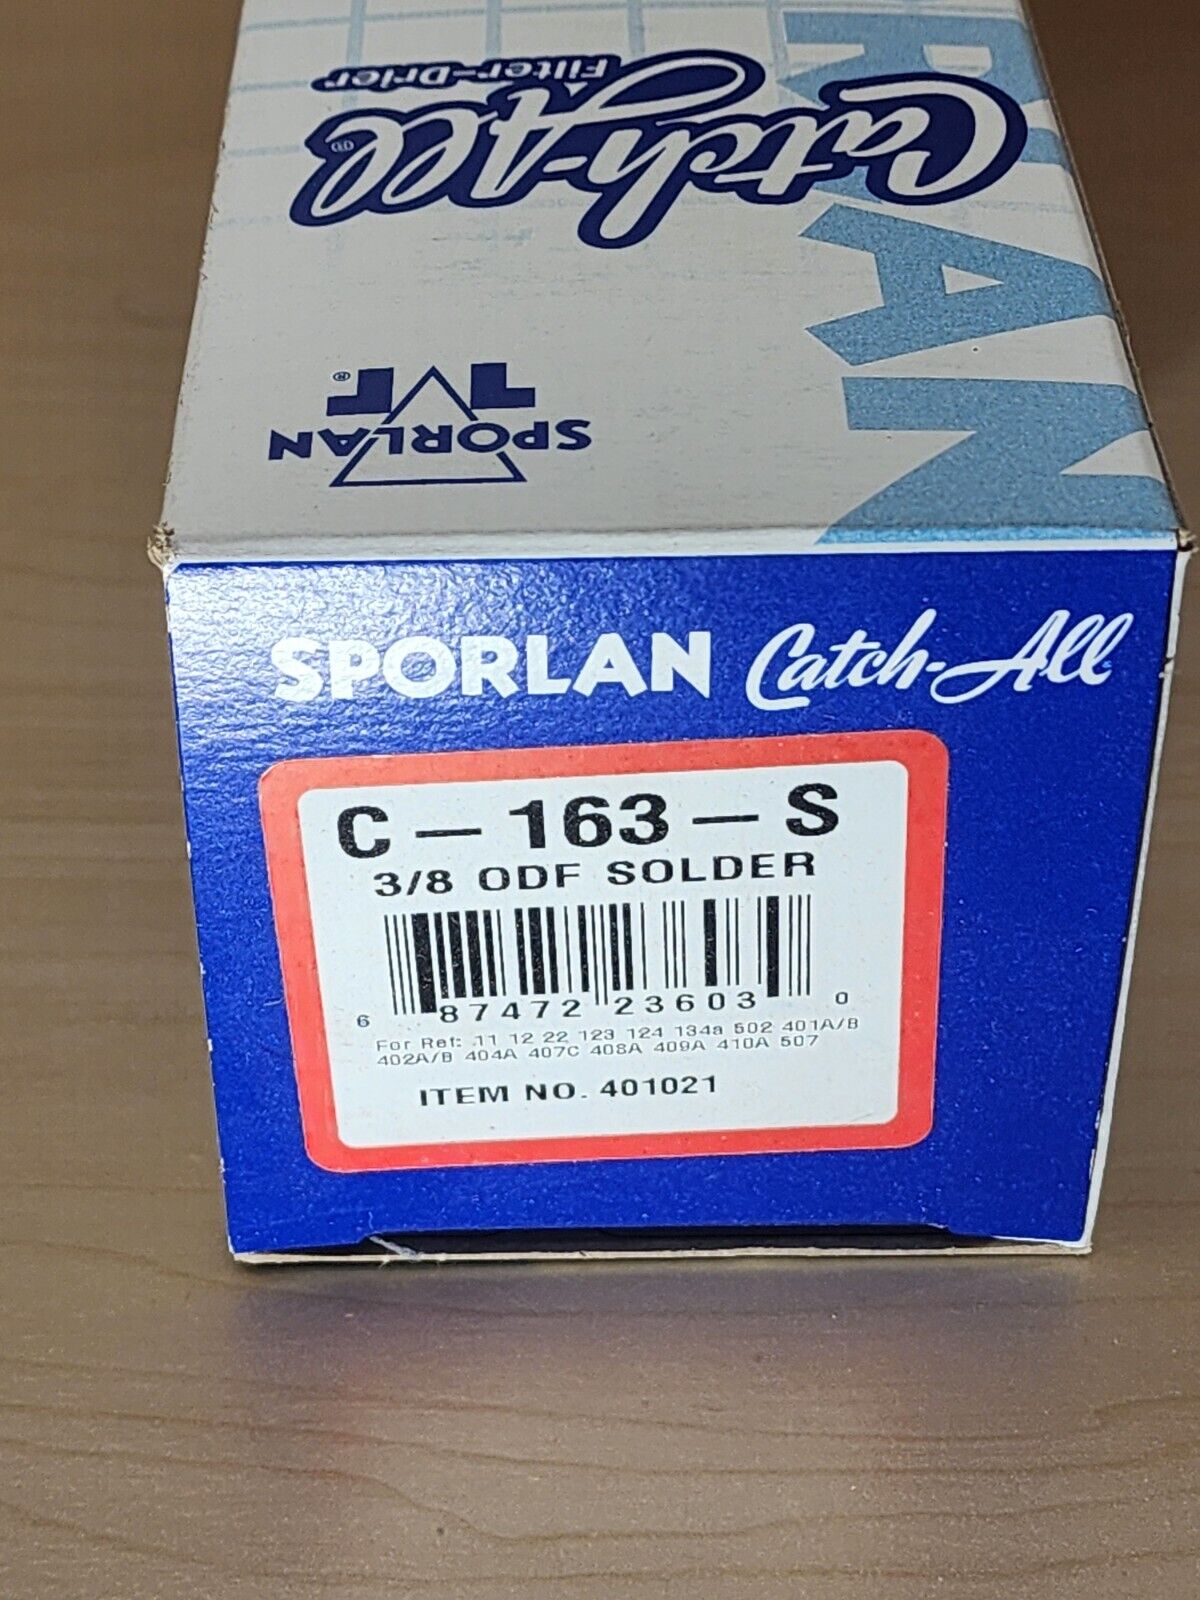 Sporlan 401021 C-163-S Filter Drier, sealed, 3/8